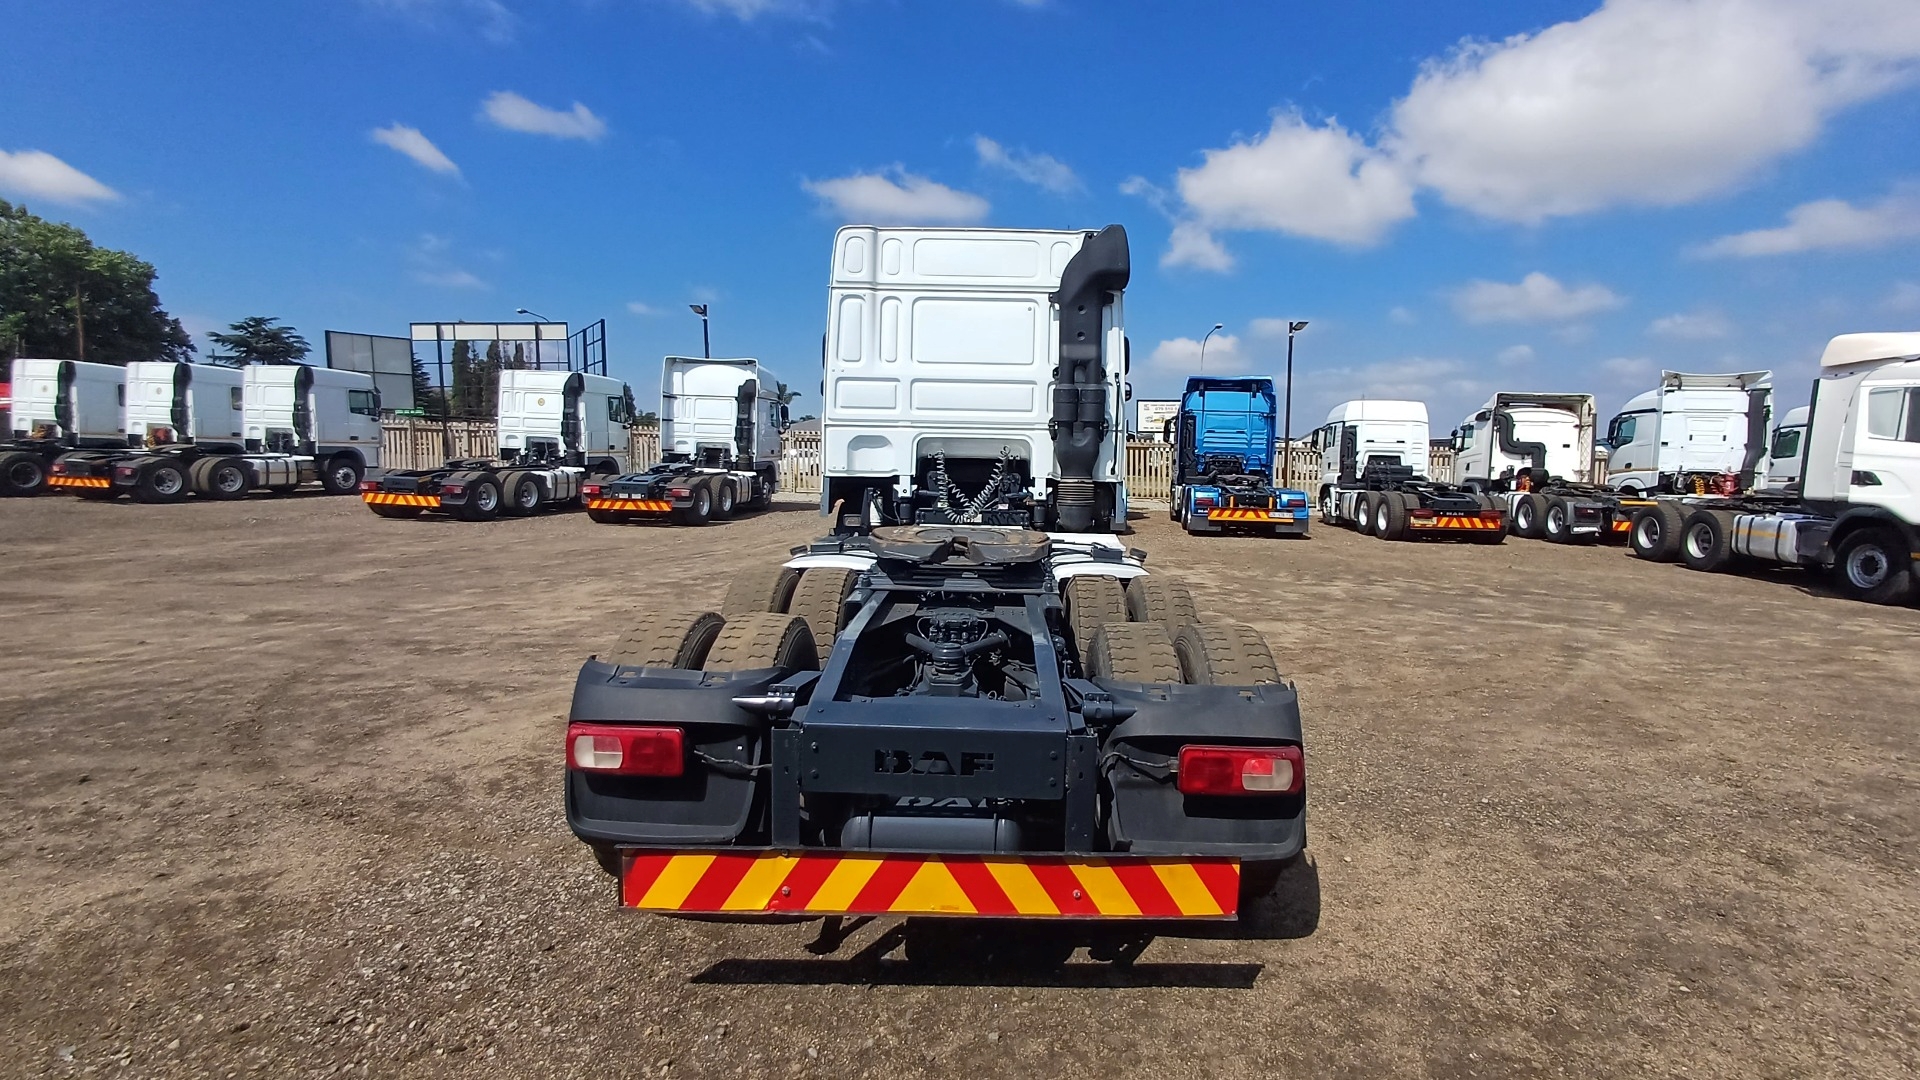 DAF Truck tractors Double axle 2019 MODEL XF 105.460 6X4 TT 2019 for sale by A2Z Trucks | Truck & Trailer Marketplace